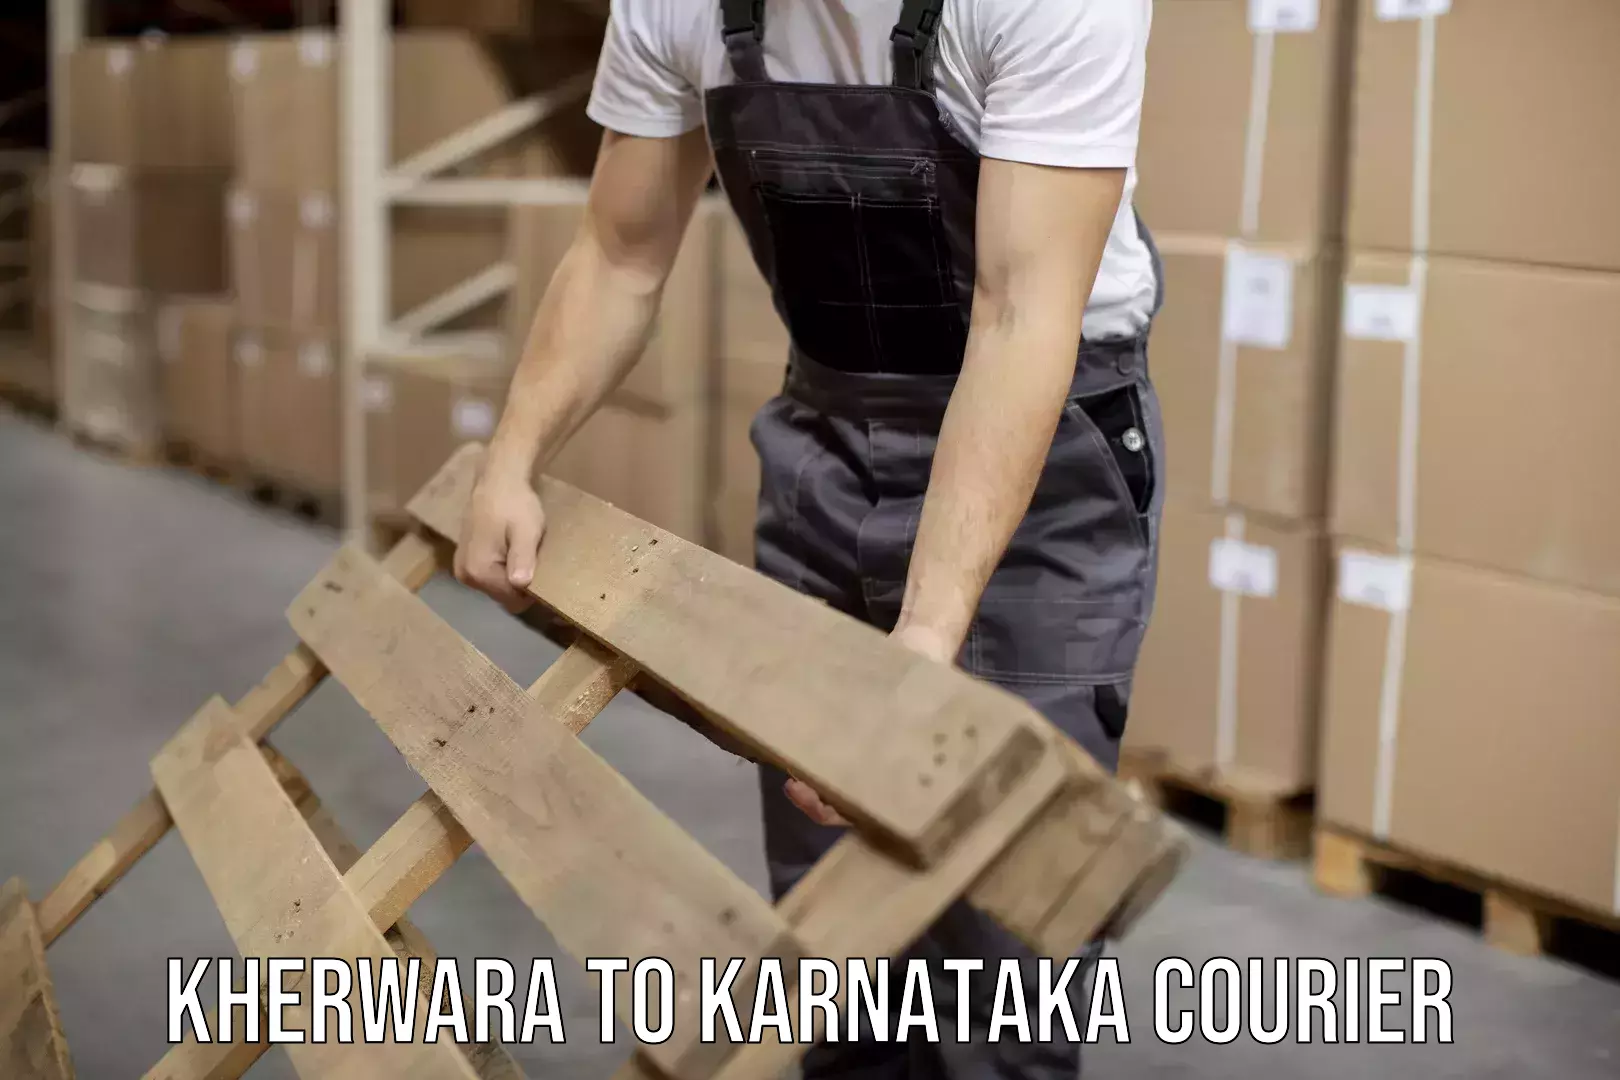 Cost-effective courier options Kherwara to Nanjangud